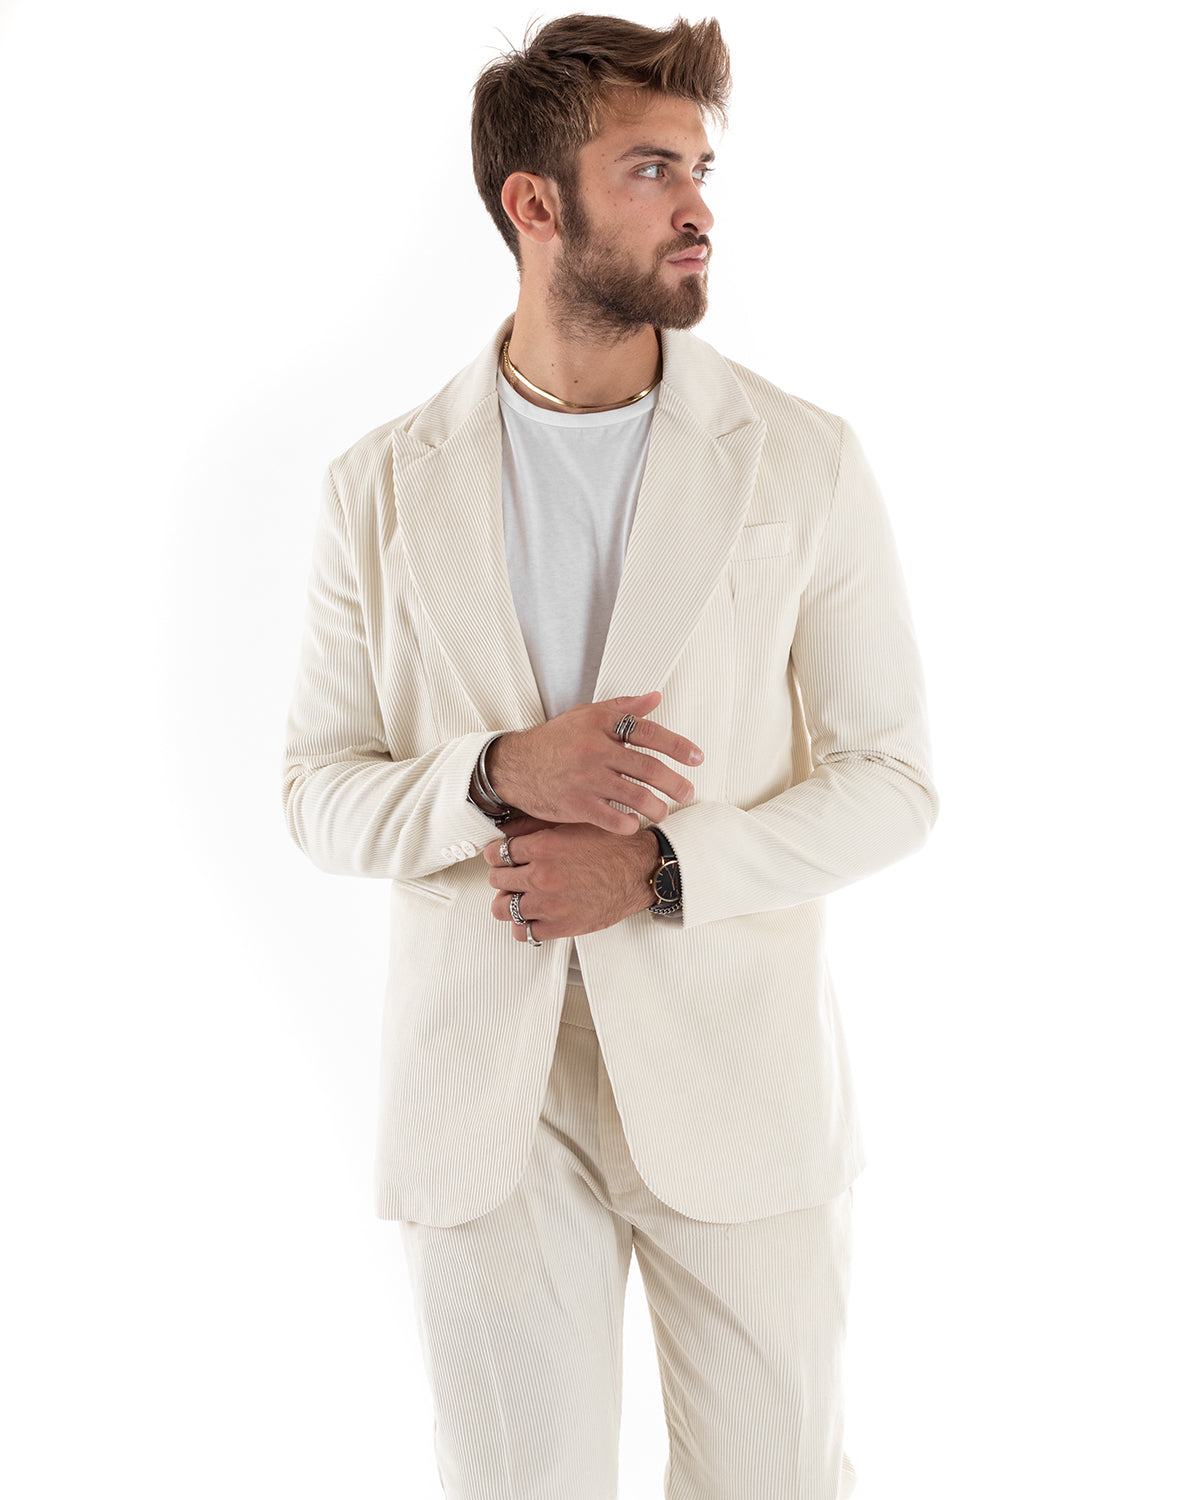 Single Breasted Men's Suit Velvet Suit Suit Jacket Pants Cream Elegant Ceremony GIOSAL-OU2189A